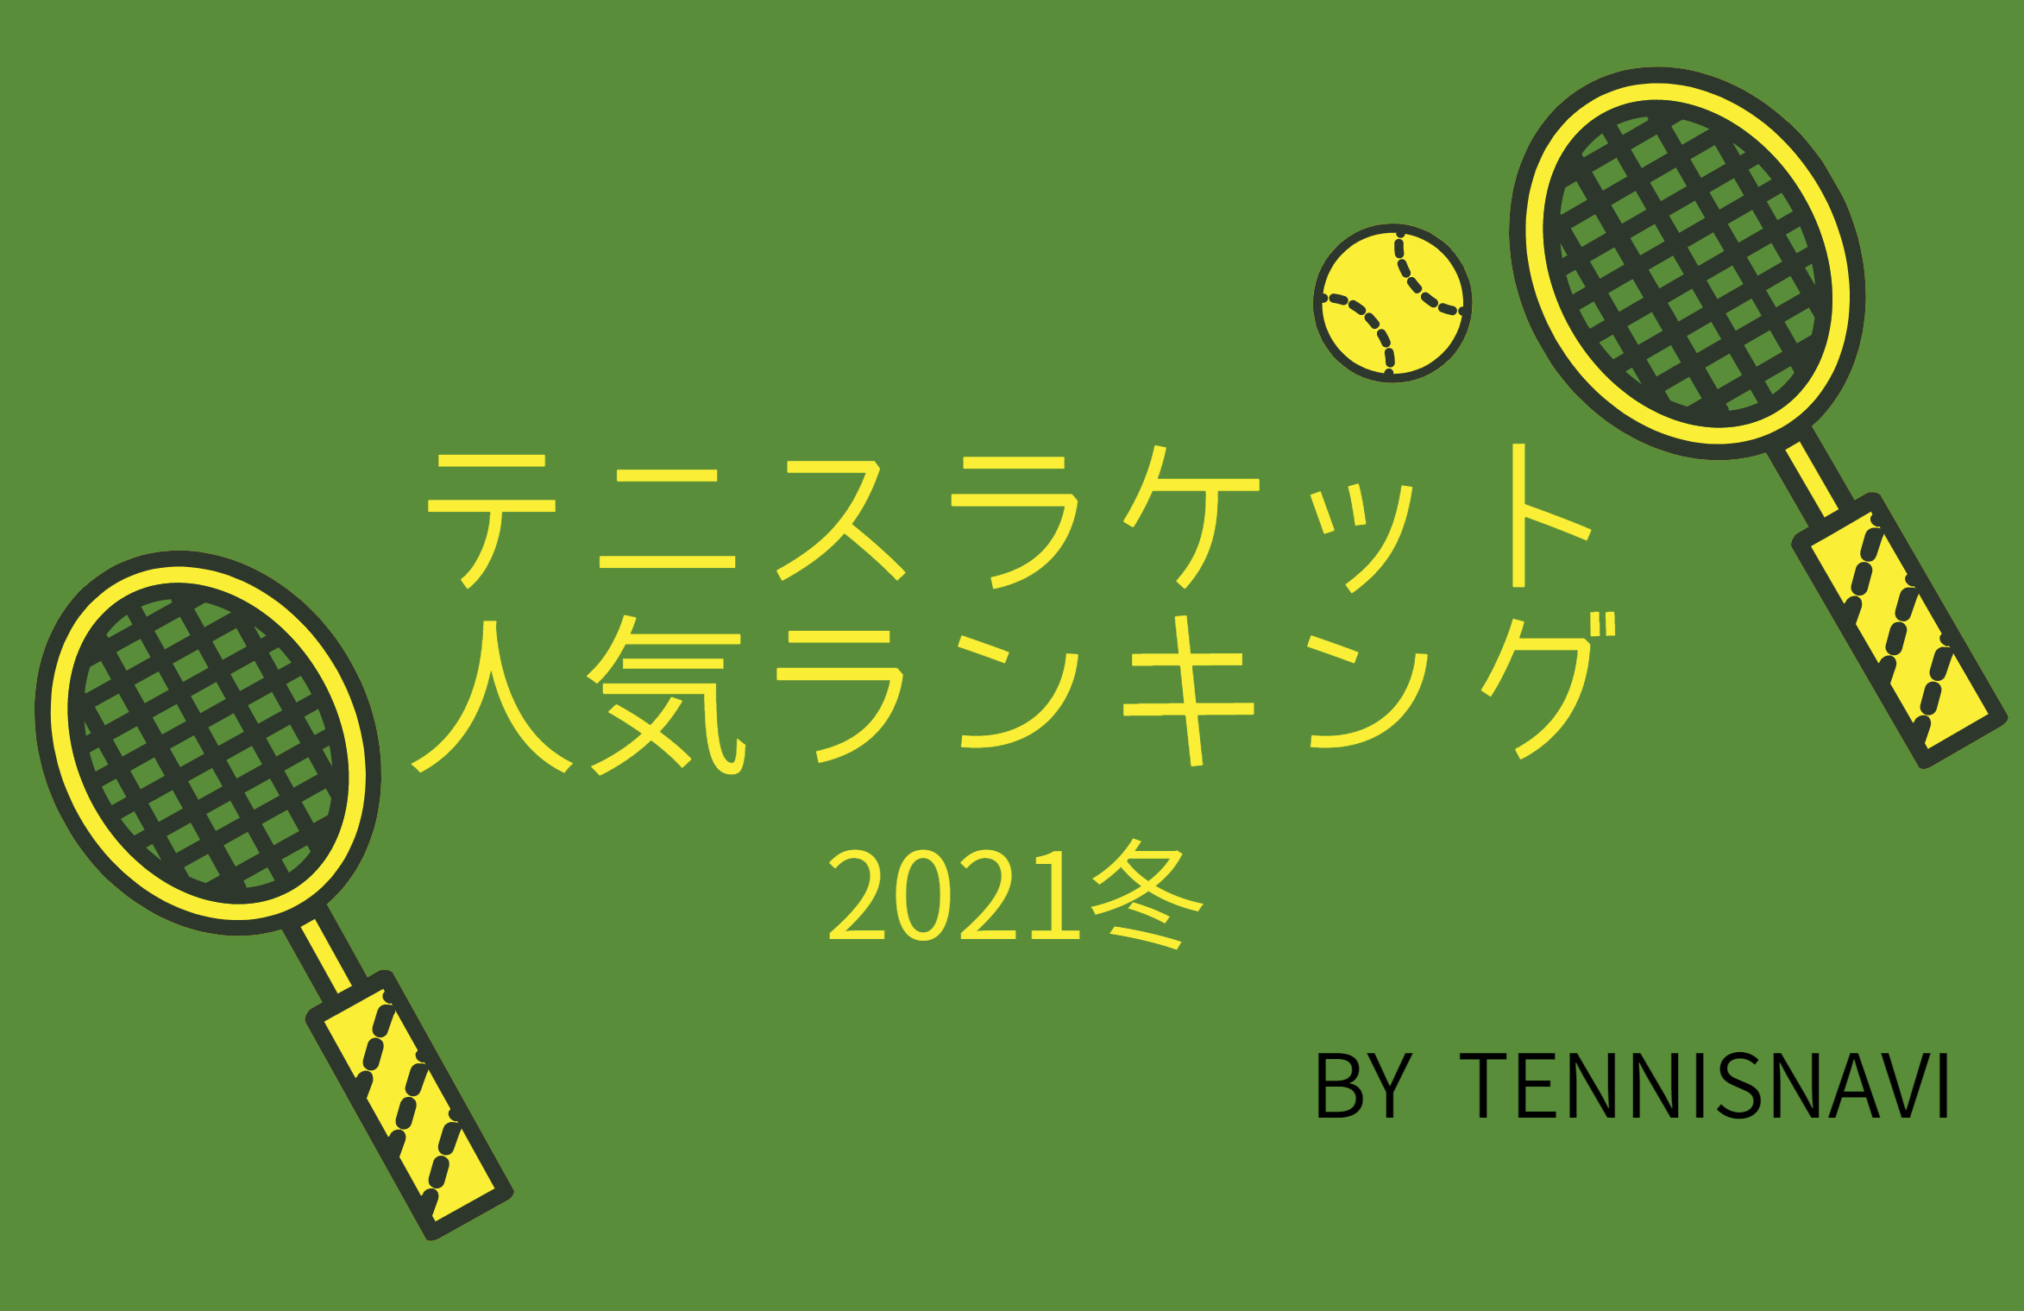 21年冬 テニスラケット最新人気ランキング テニスナビ